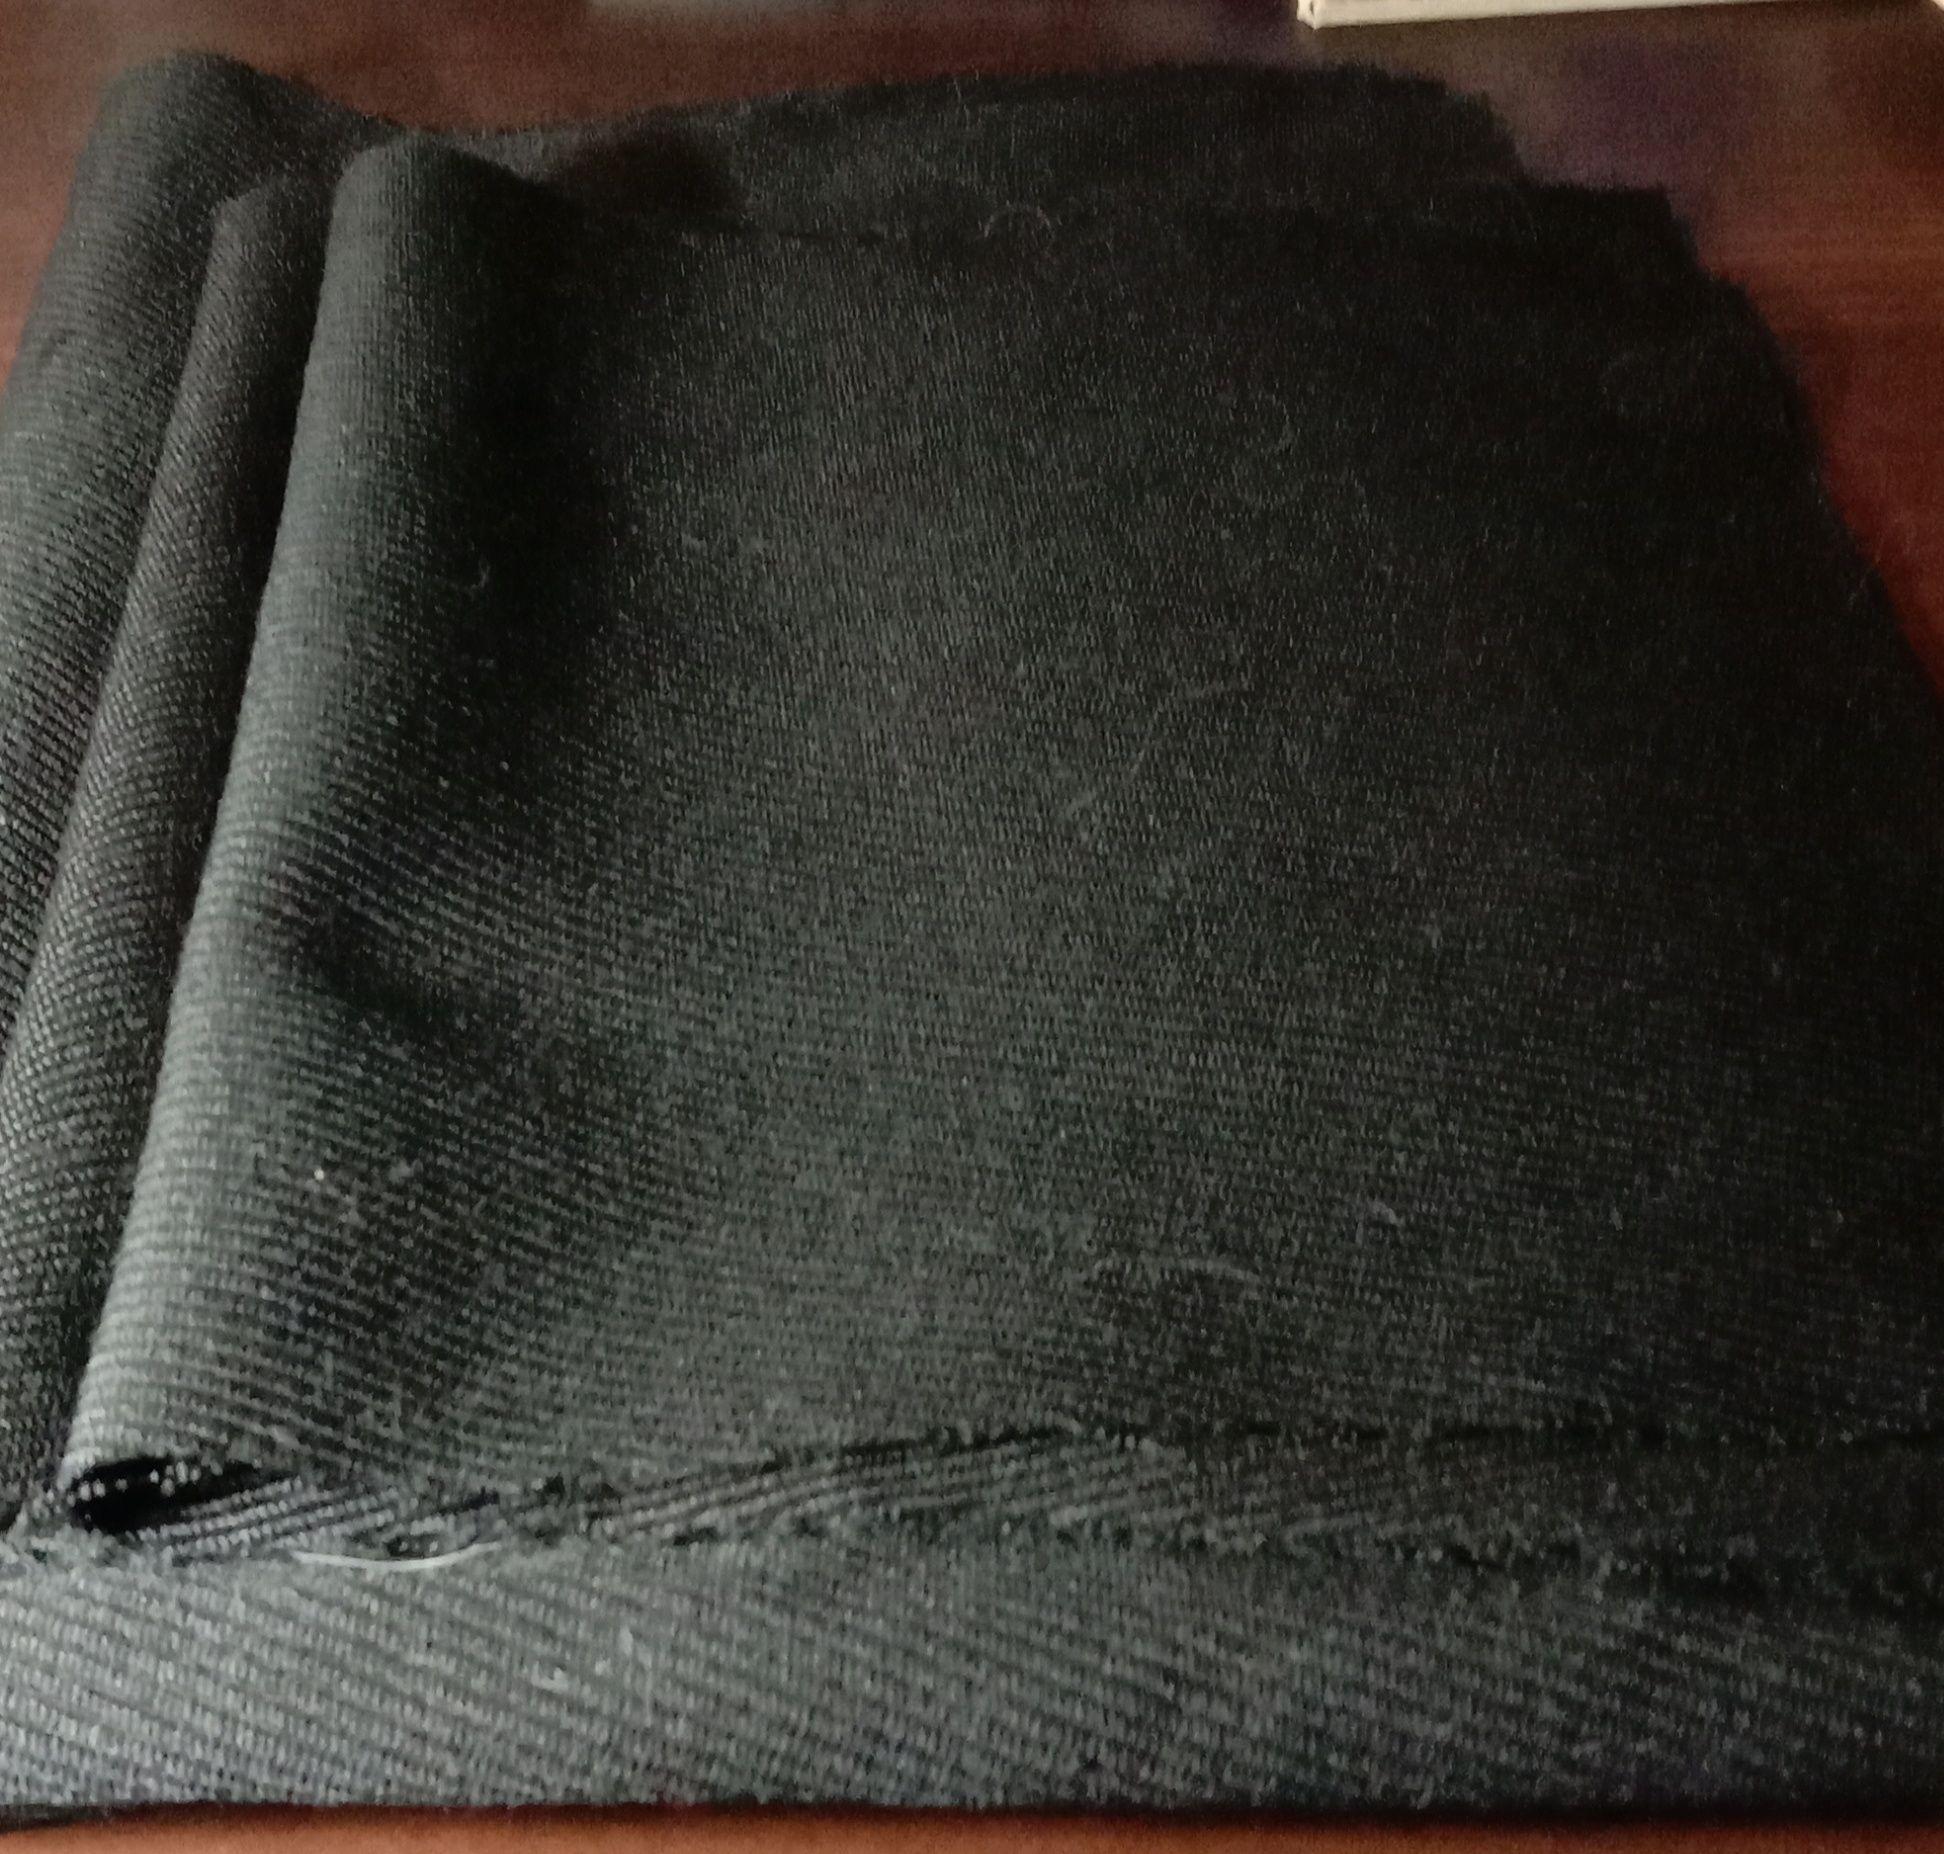 Предметы для рукоделия:  мех песца и черная юбочная ткань в 3-х кусках